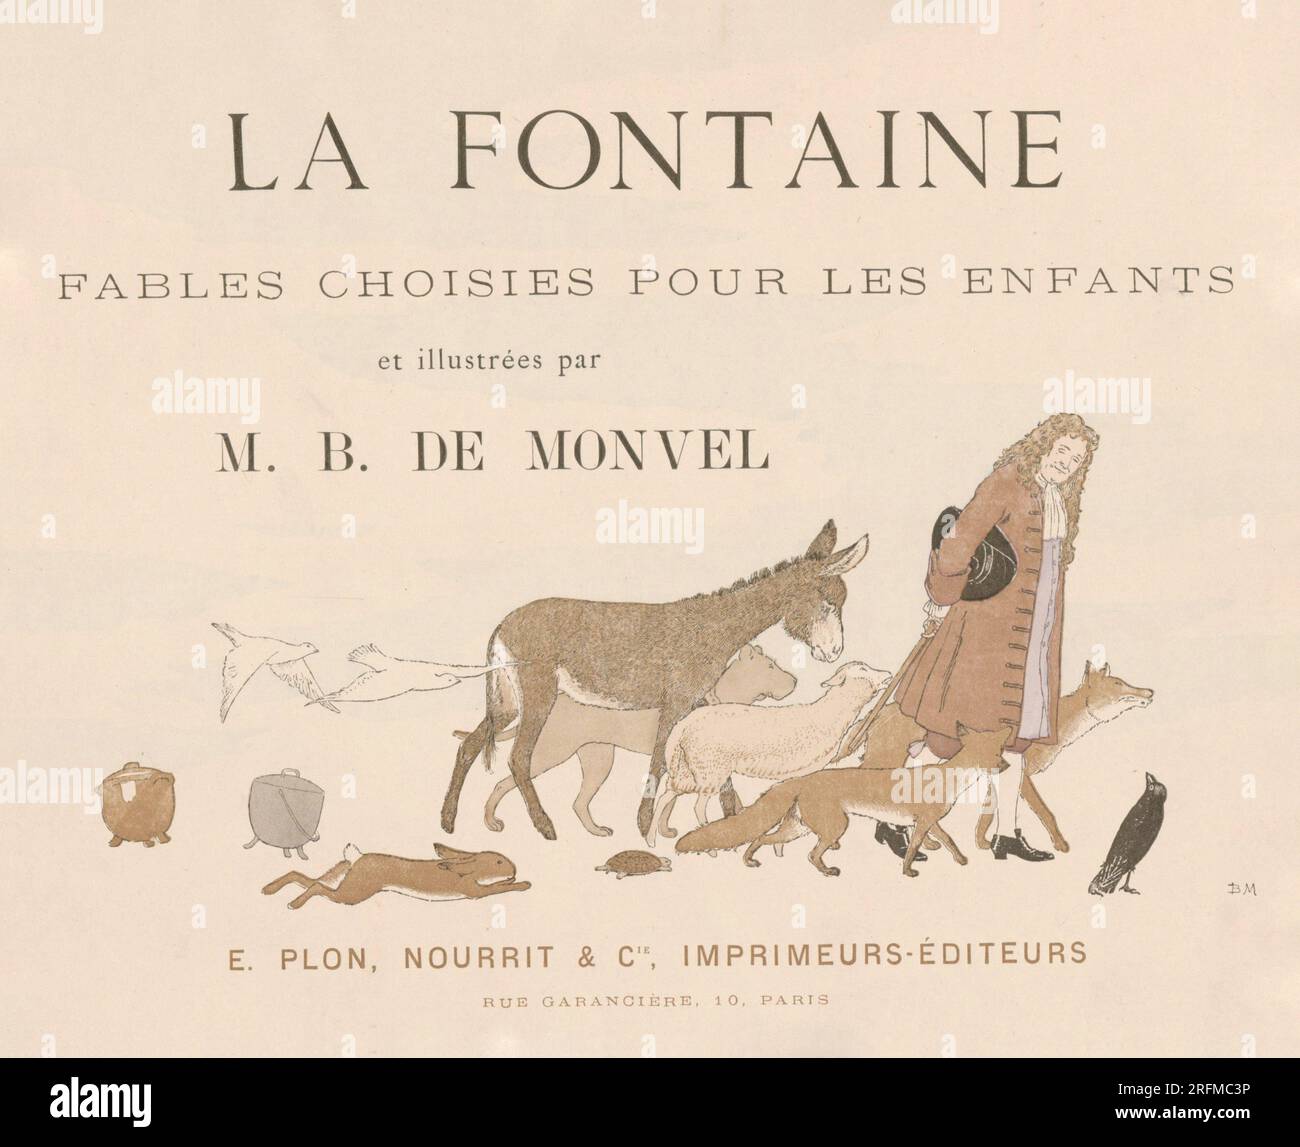 Frontispiece illustrated by Louis-Maurice Boutet de Monvel and published in 'La Fontaine: Fables choisies pour les enfants' by Plon, Nourrit et Cie (Paris), in 1888. Stock Photo